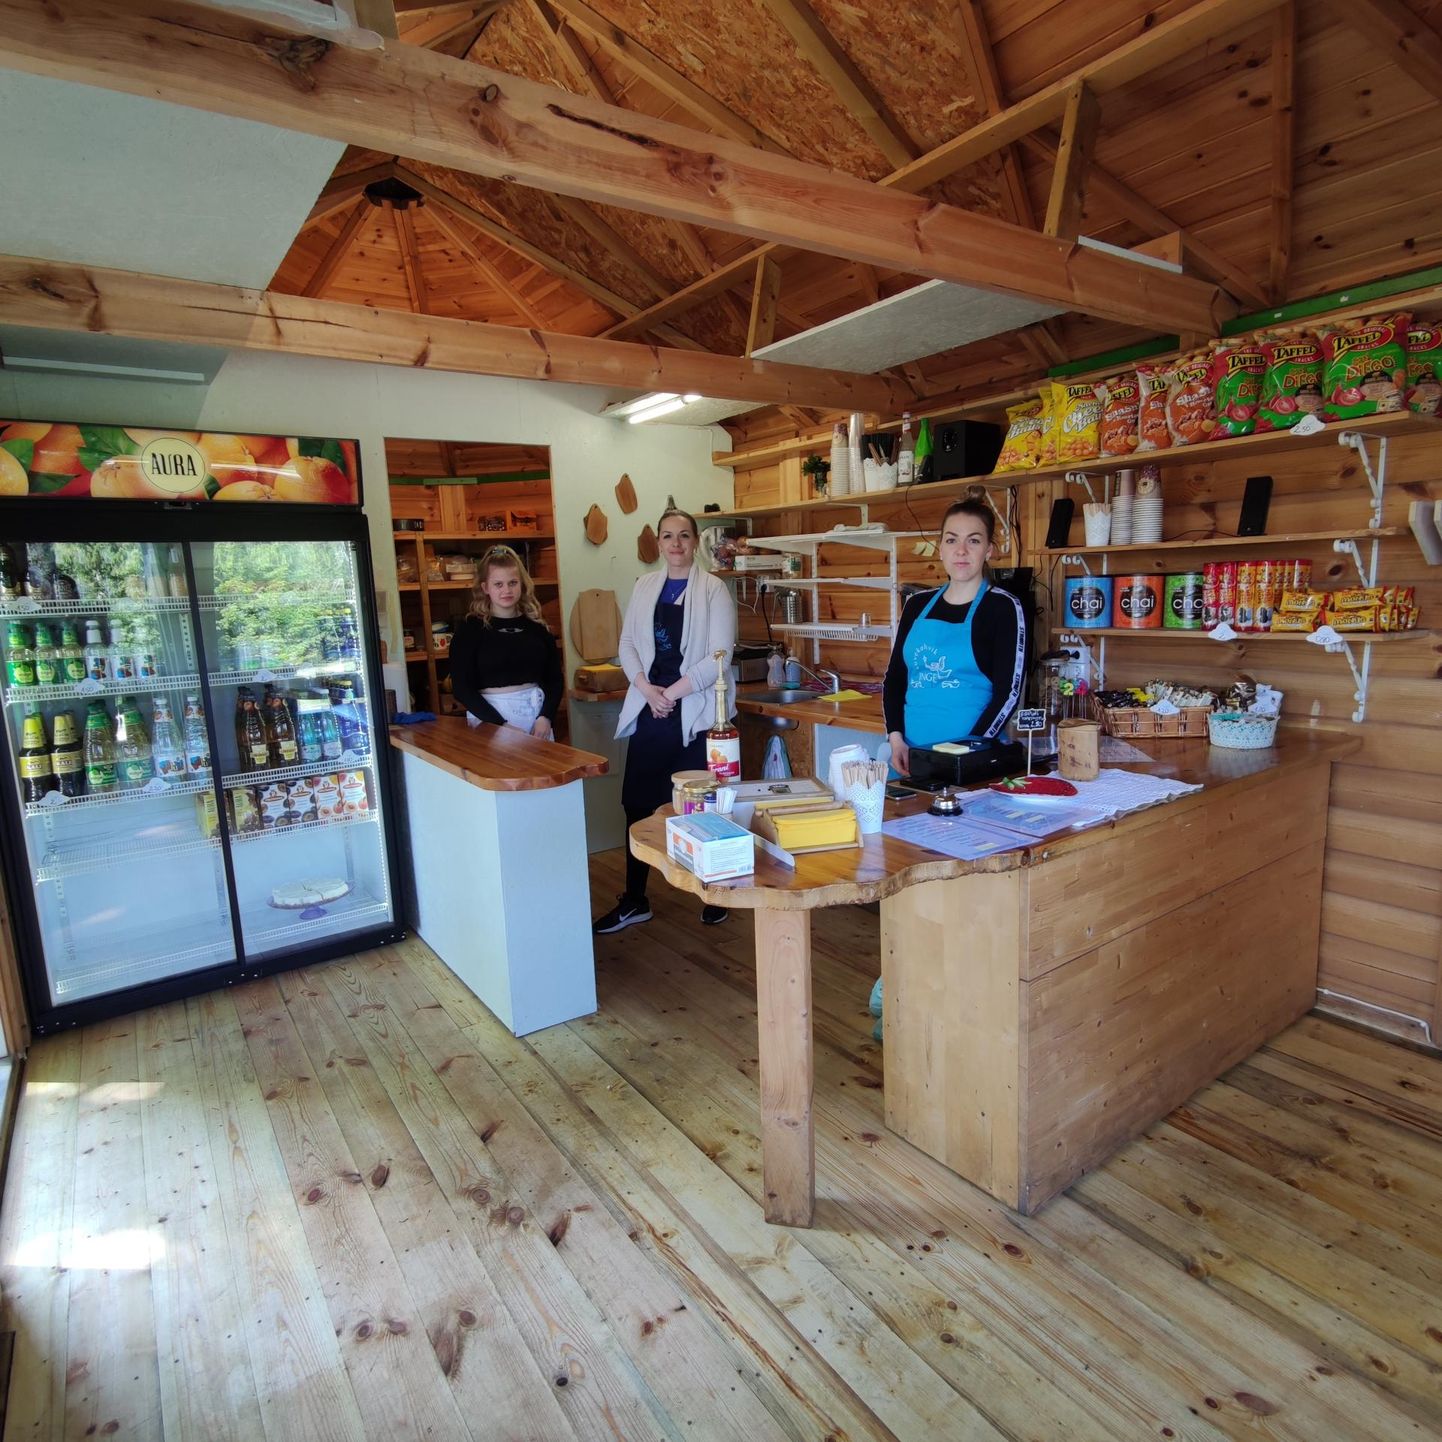 Pühapäeval avati Pilistvere Ingli kohvik külastajatele. Põhitöötajad Marta Pedosk (paremal) ja Rutt Pedosk (keskel) ning õpilane Analene Liiver.